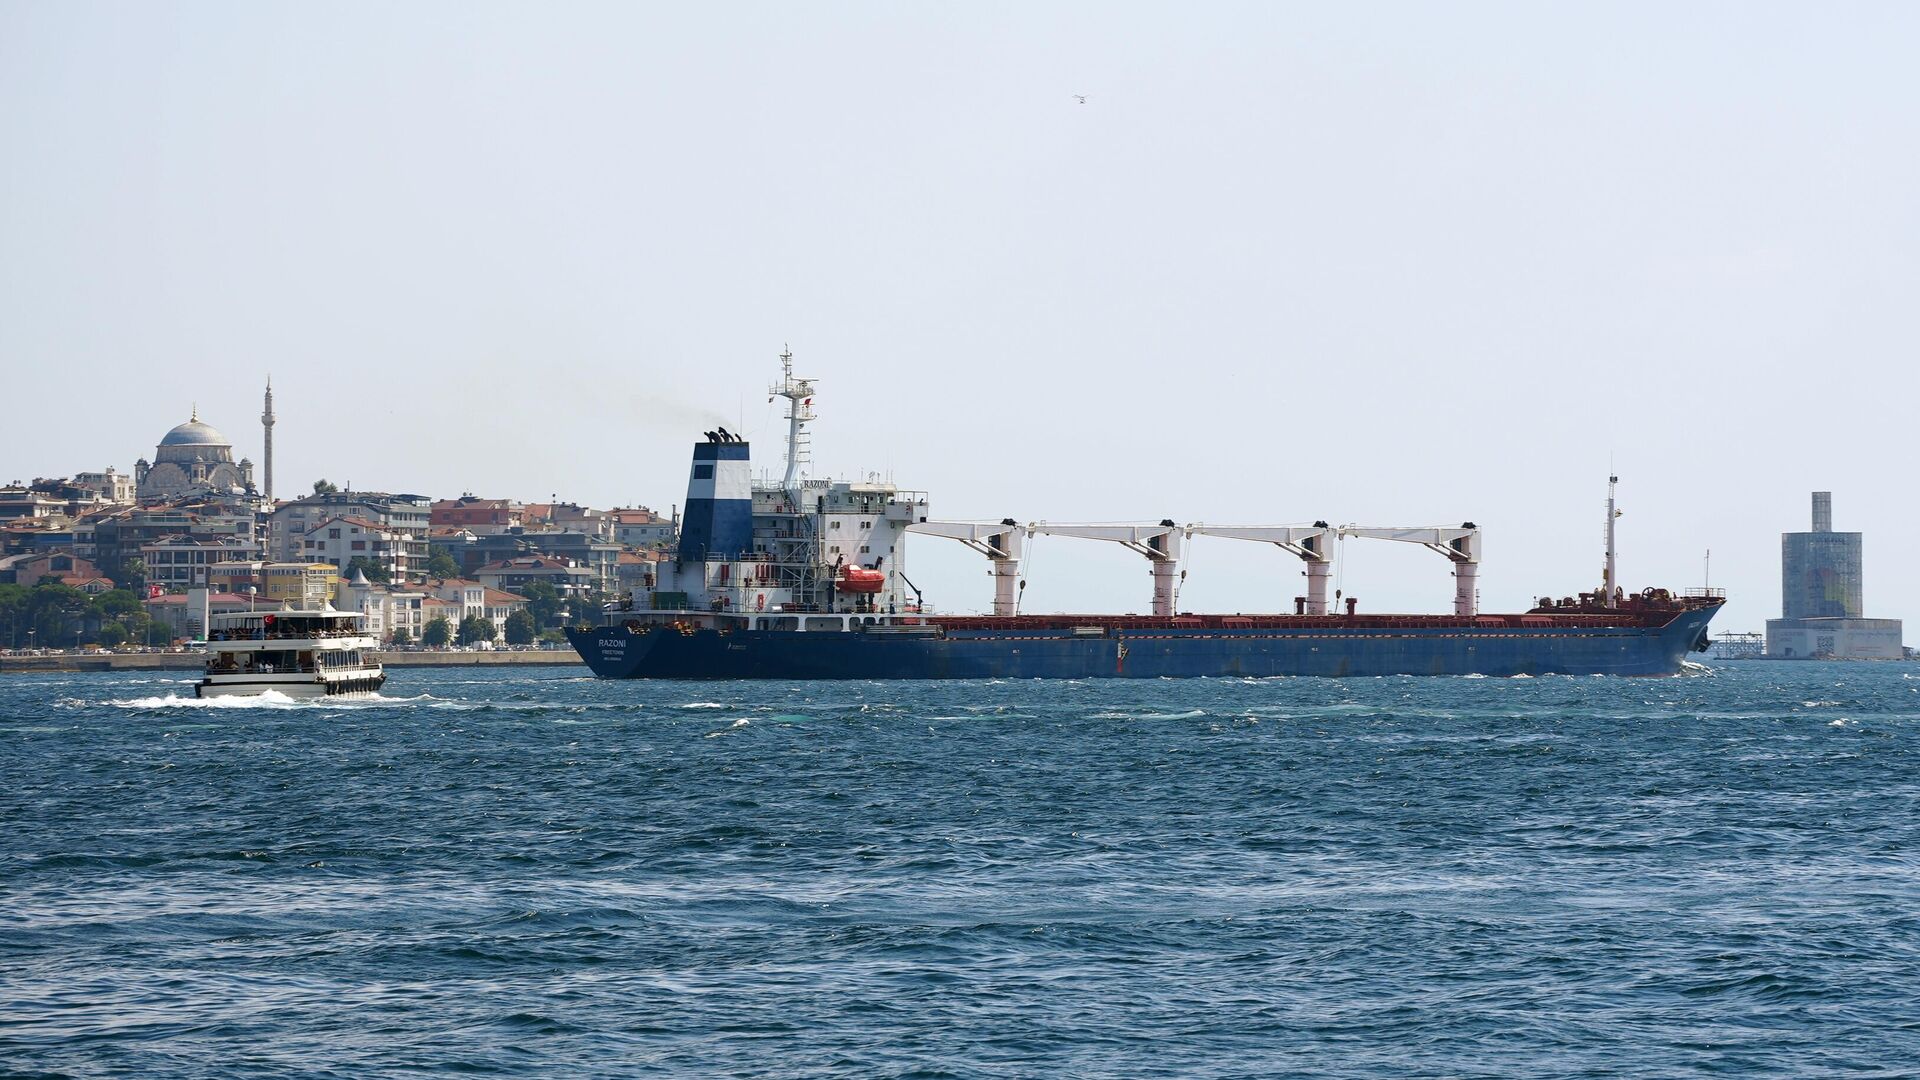 Հացահատիկի գործարքից Ռուսաստանի դուրս գալուց հետո երկրորդ բեռնատար նավն է լքել Օդեսայի նավահանգիստը